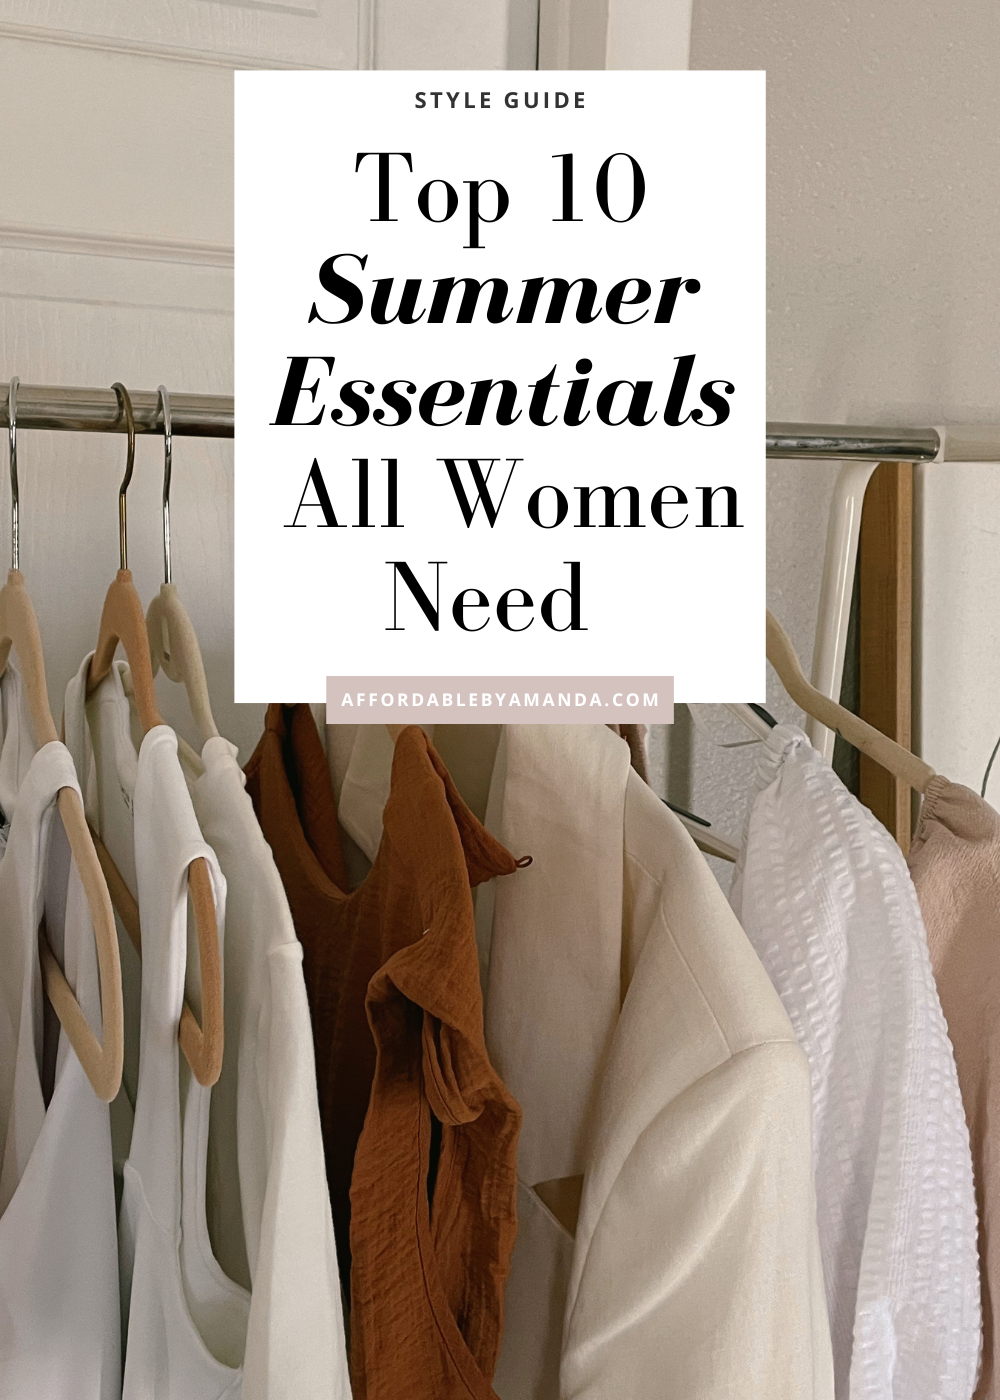 Best Work-Appropriate Summer Fashion Essentials for Women